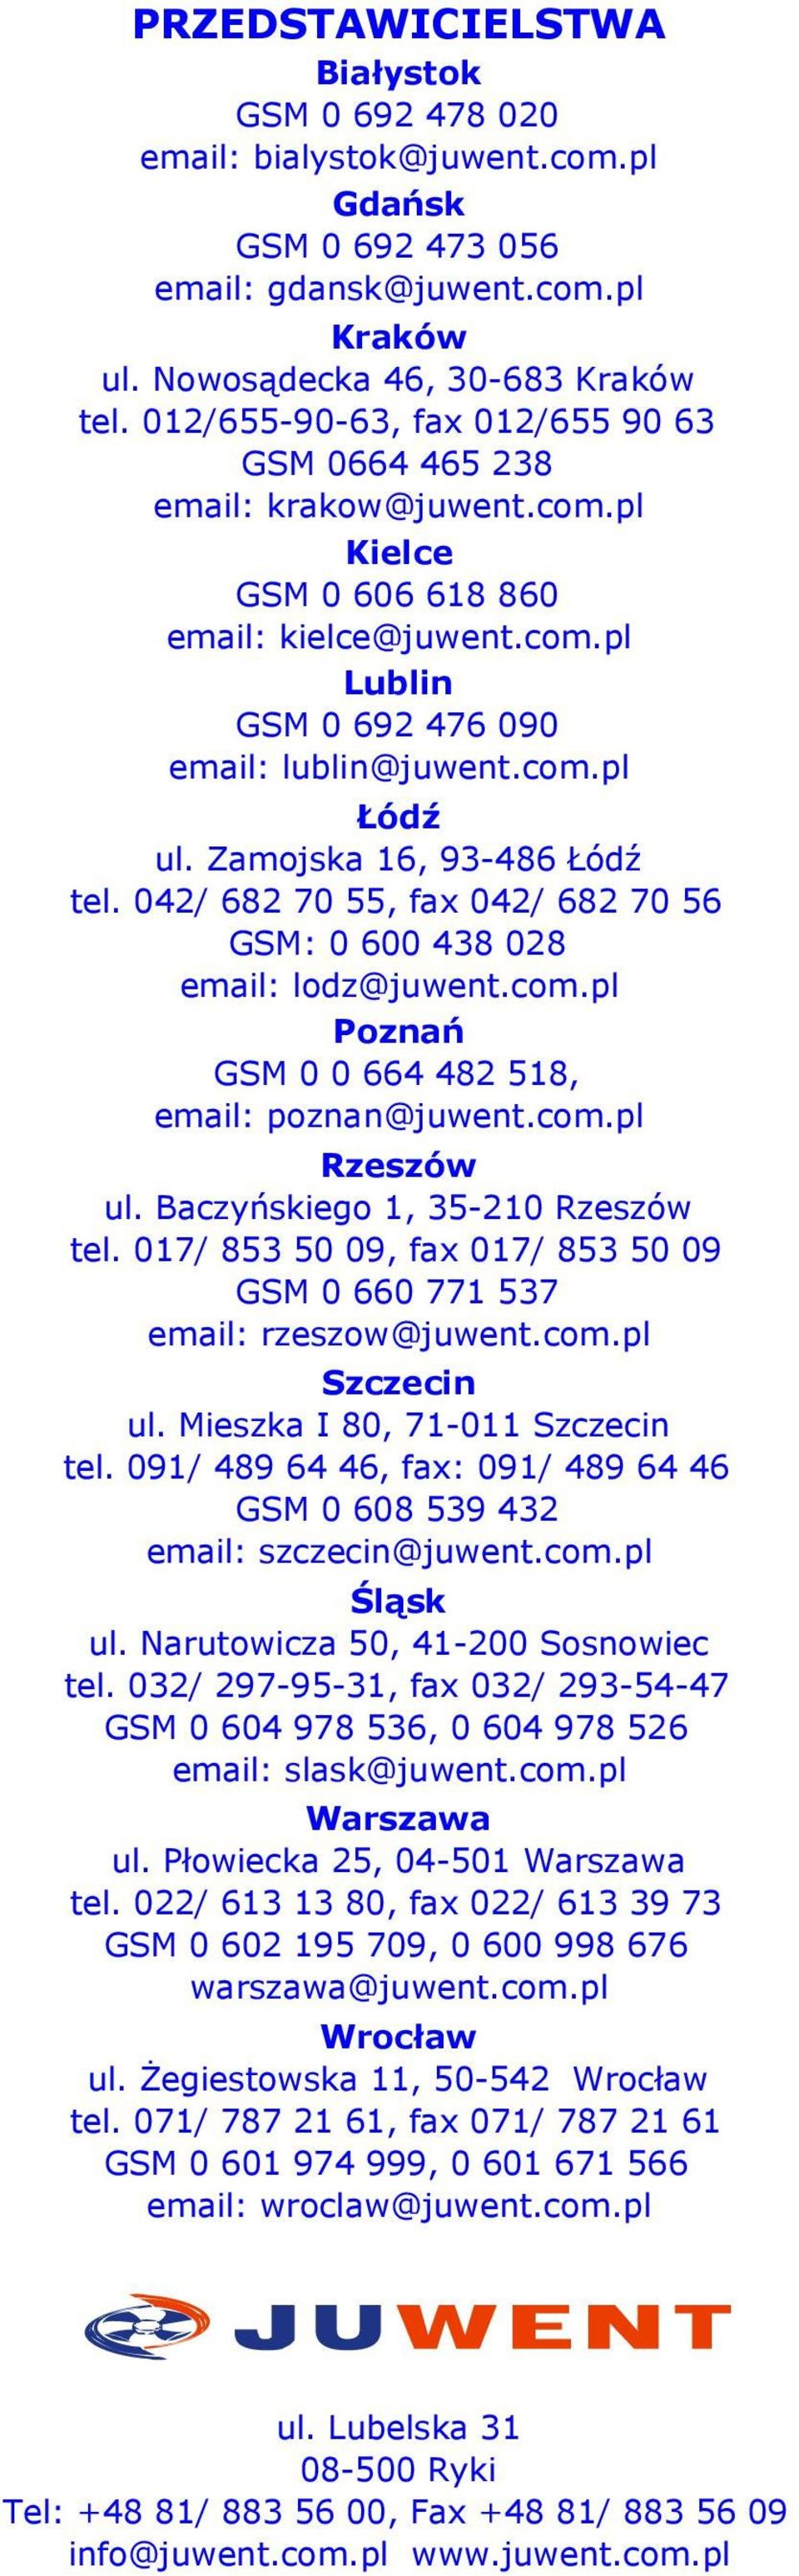 Zamojska 16, 93-486 Łódź tel. 042/ 682 70 55, fax 042/ 682 70 56 GSM: 0 438 028 email: lodz@juwent.com.pl Poznań GSM 0 0 664 482 518, email: poznan@juwent.com.pl Rzeszów ul.